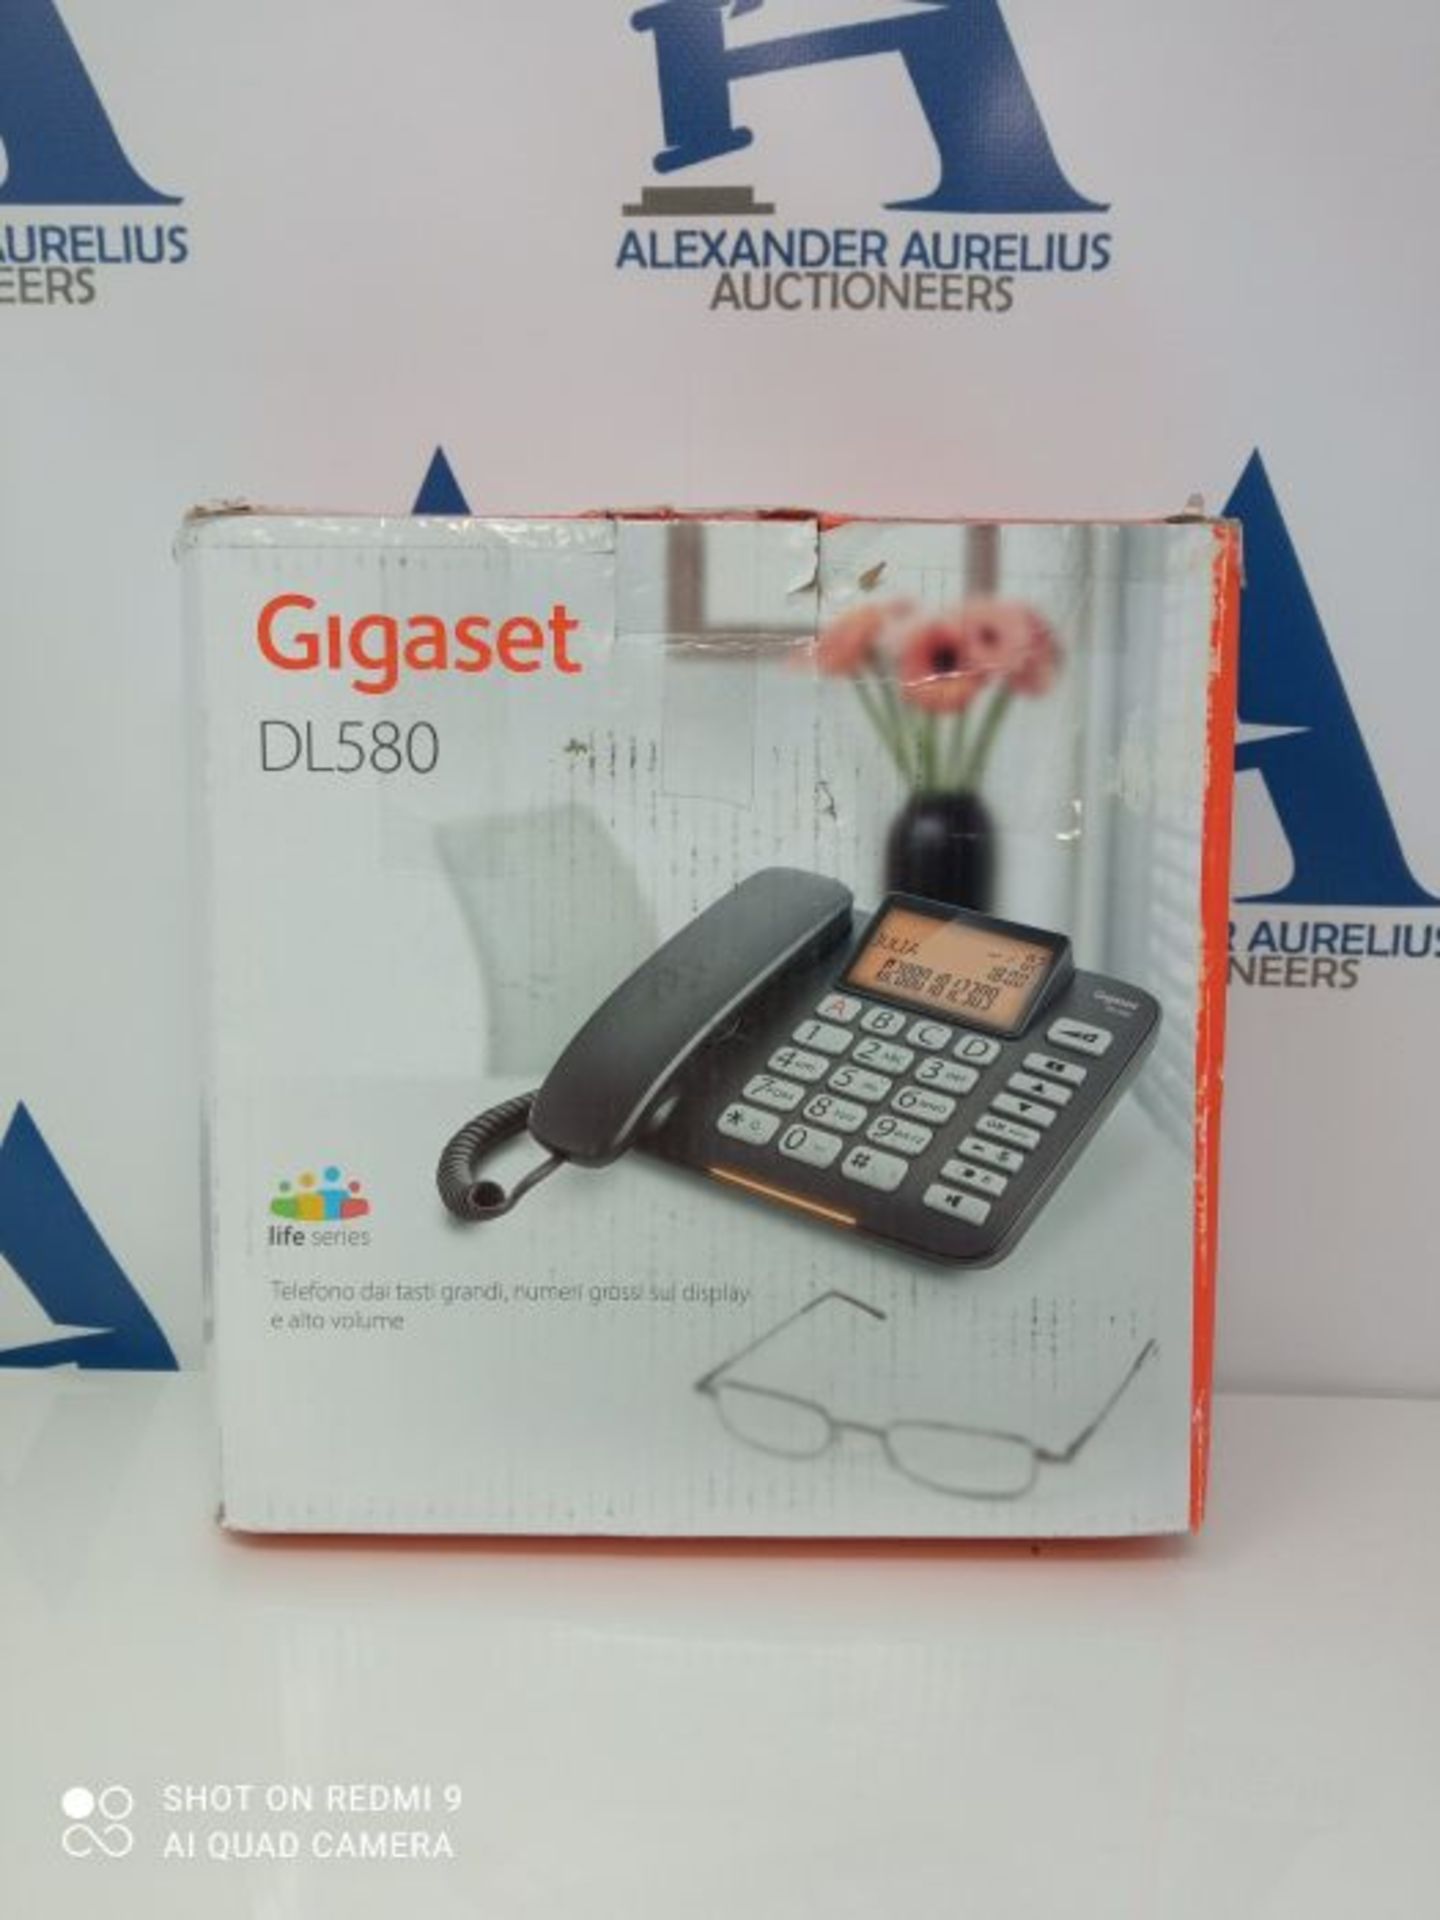 Gigaset DL580 telephone Analog telephone Black Caller ID - Telephones (Analog telephon - Image 2 of 3